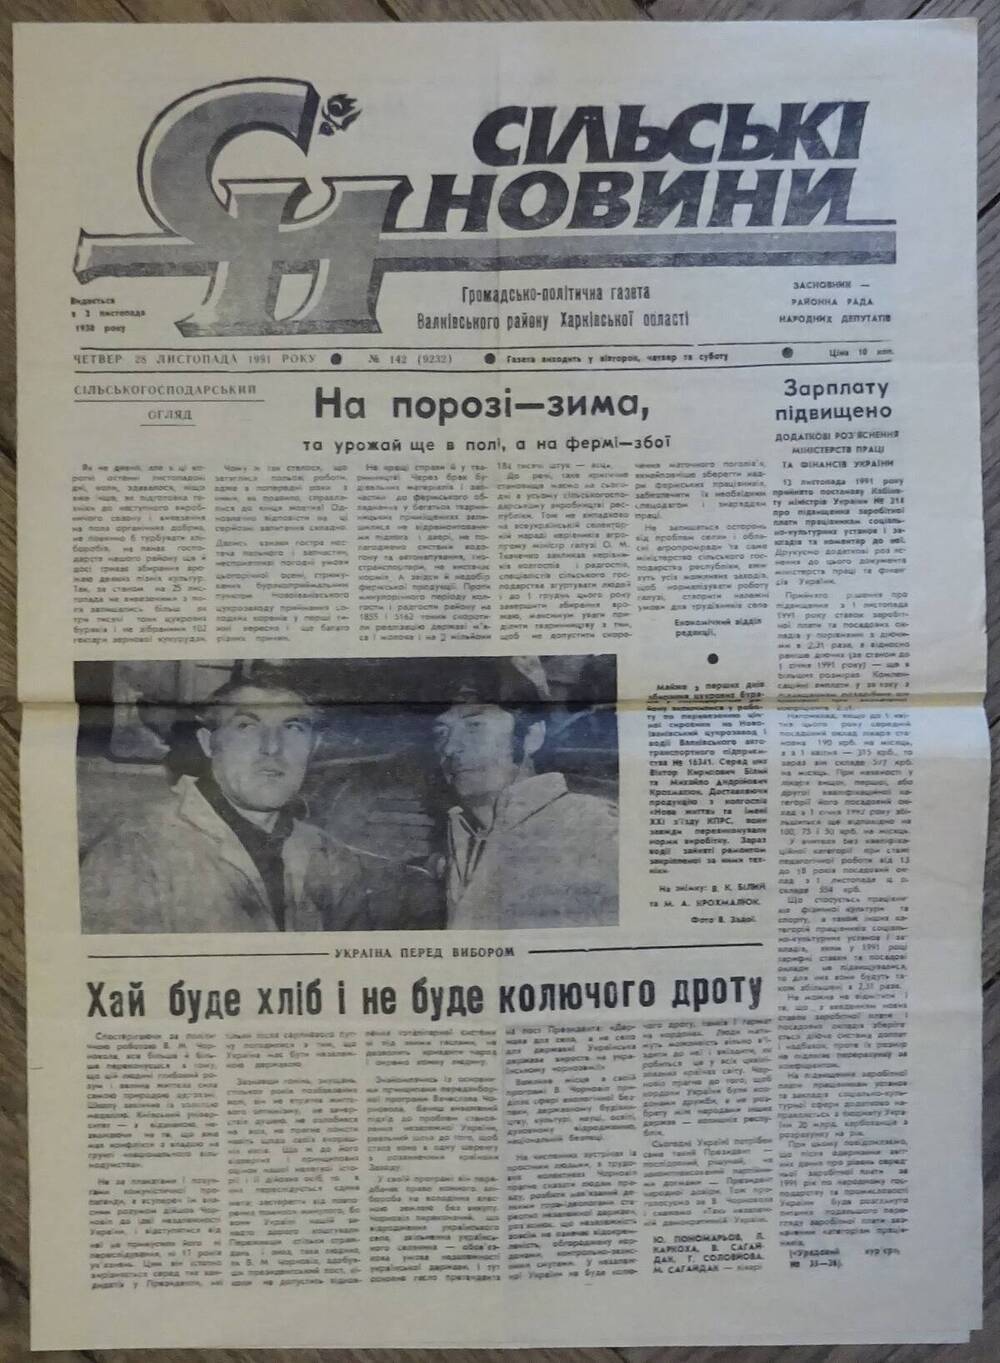 Газета «Сельские новости» от 28.11.1991 г. со статьей «И пришло признание».